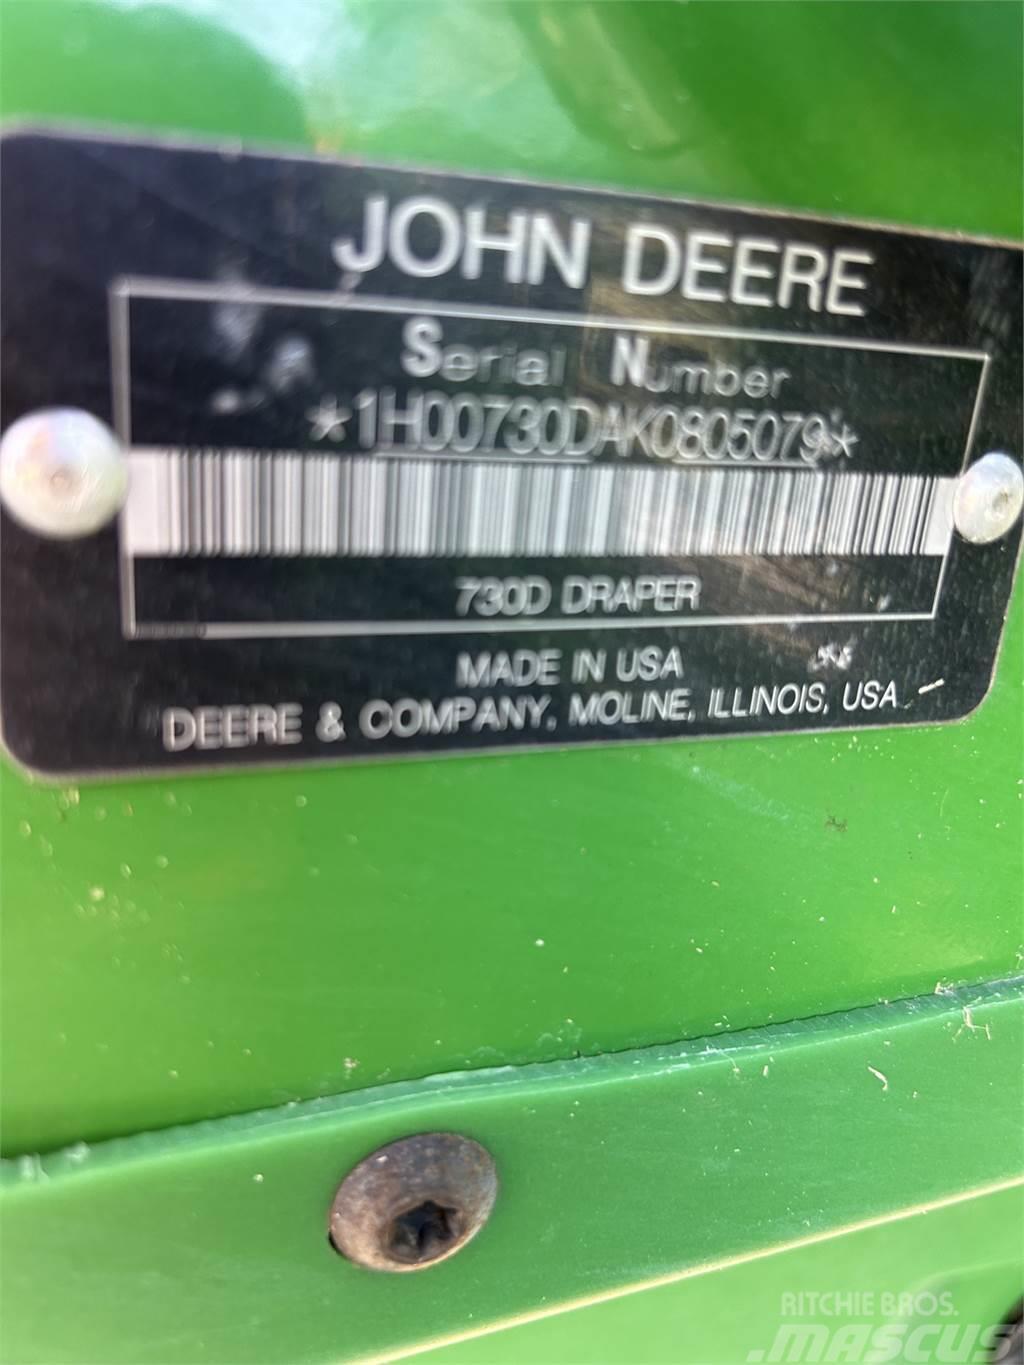 John Deere 730D Príslušenstvo a náhradné diely ku kombajnom